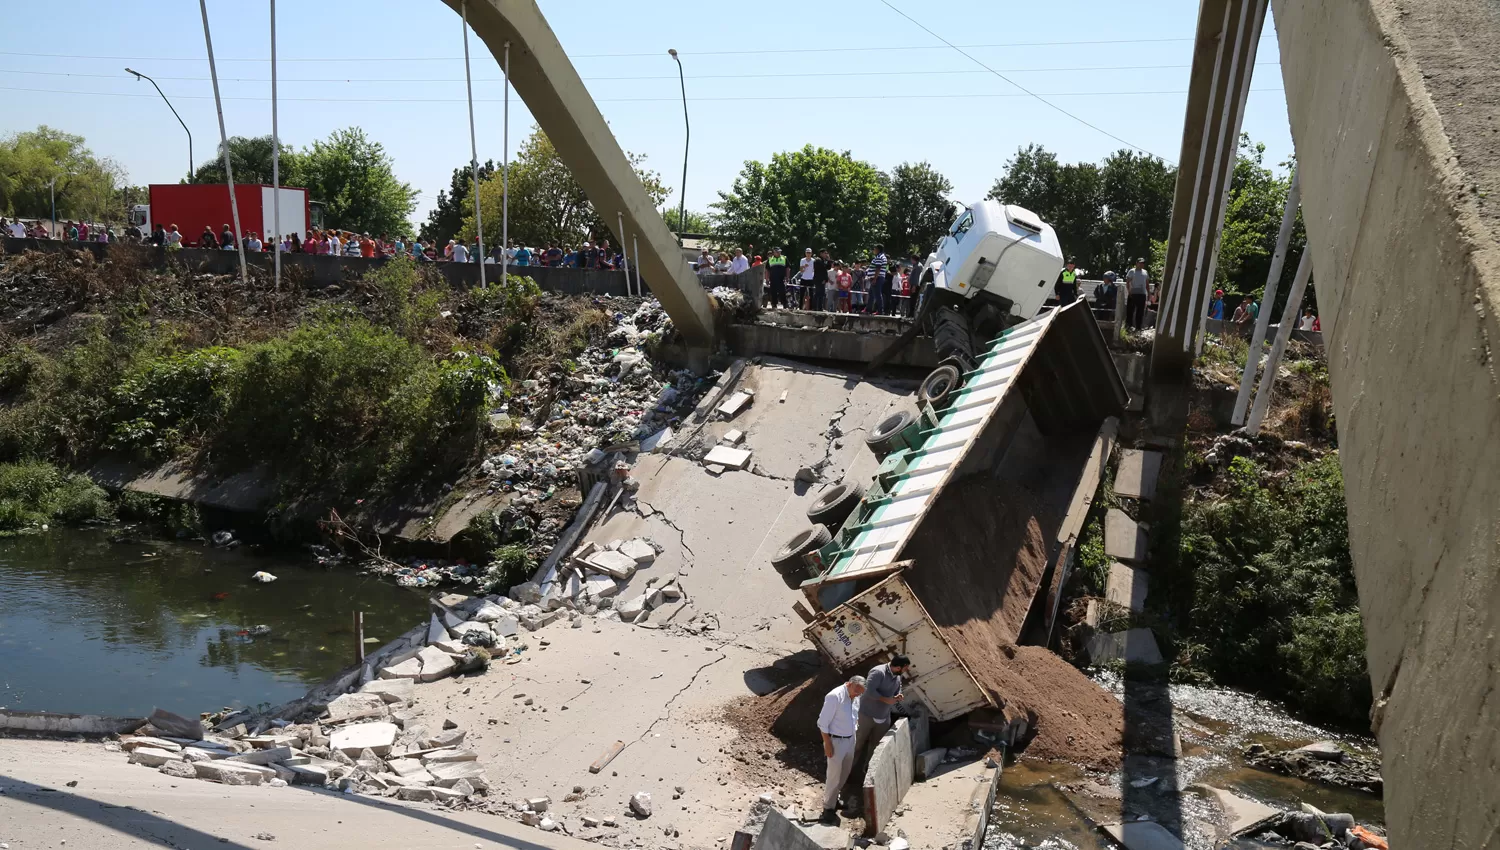 Los vecinos se mostraron asombrados por el derrumbe del puente.